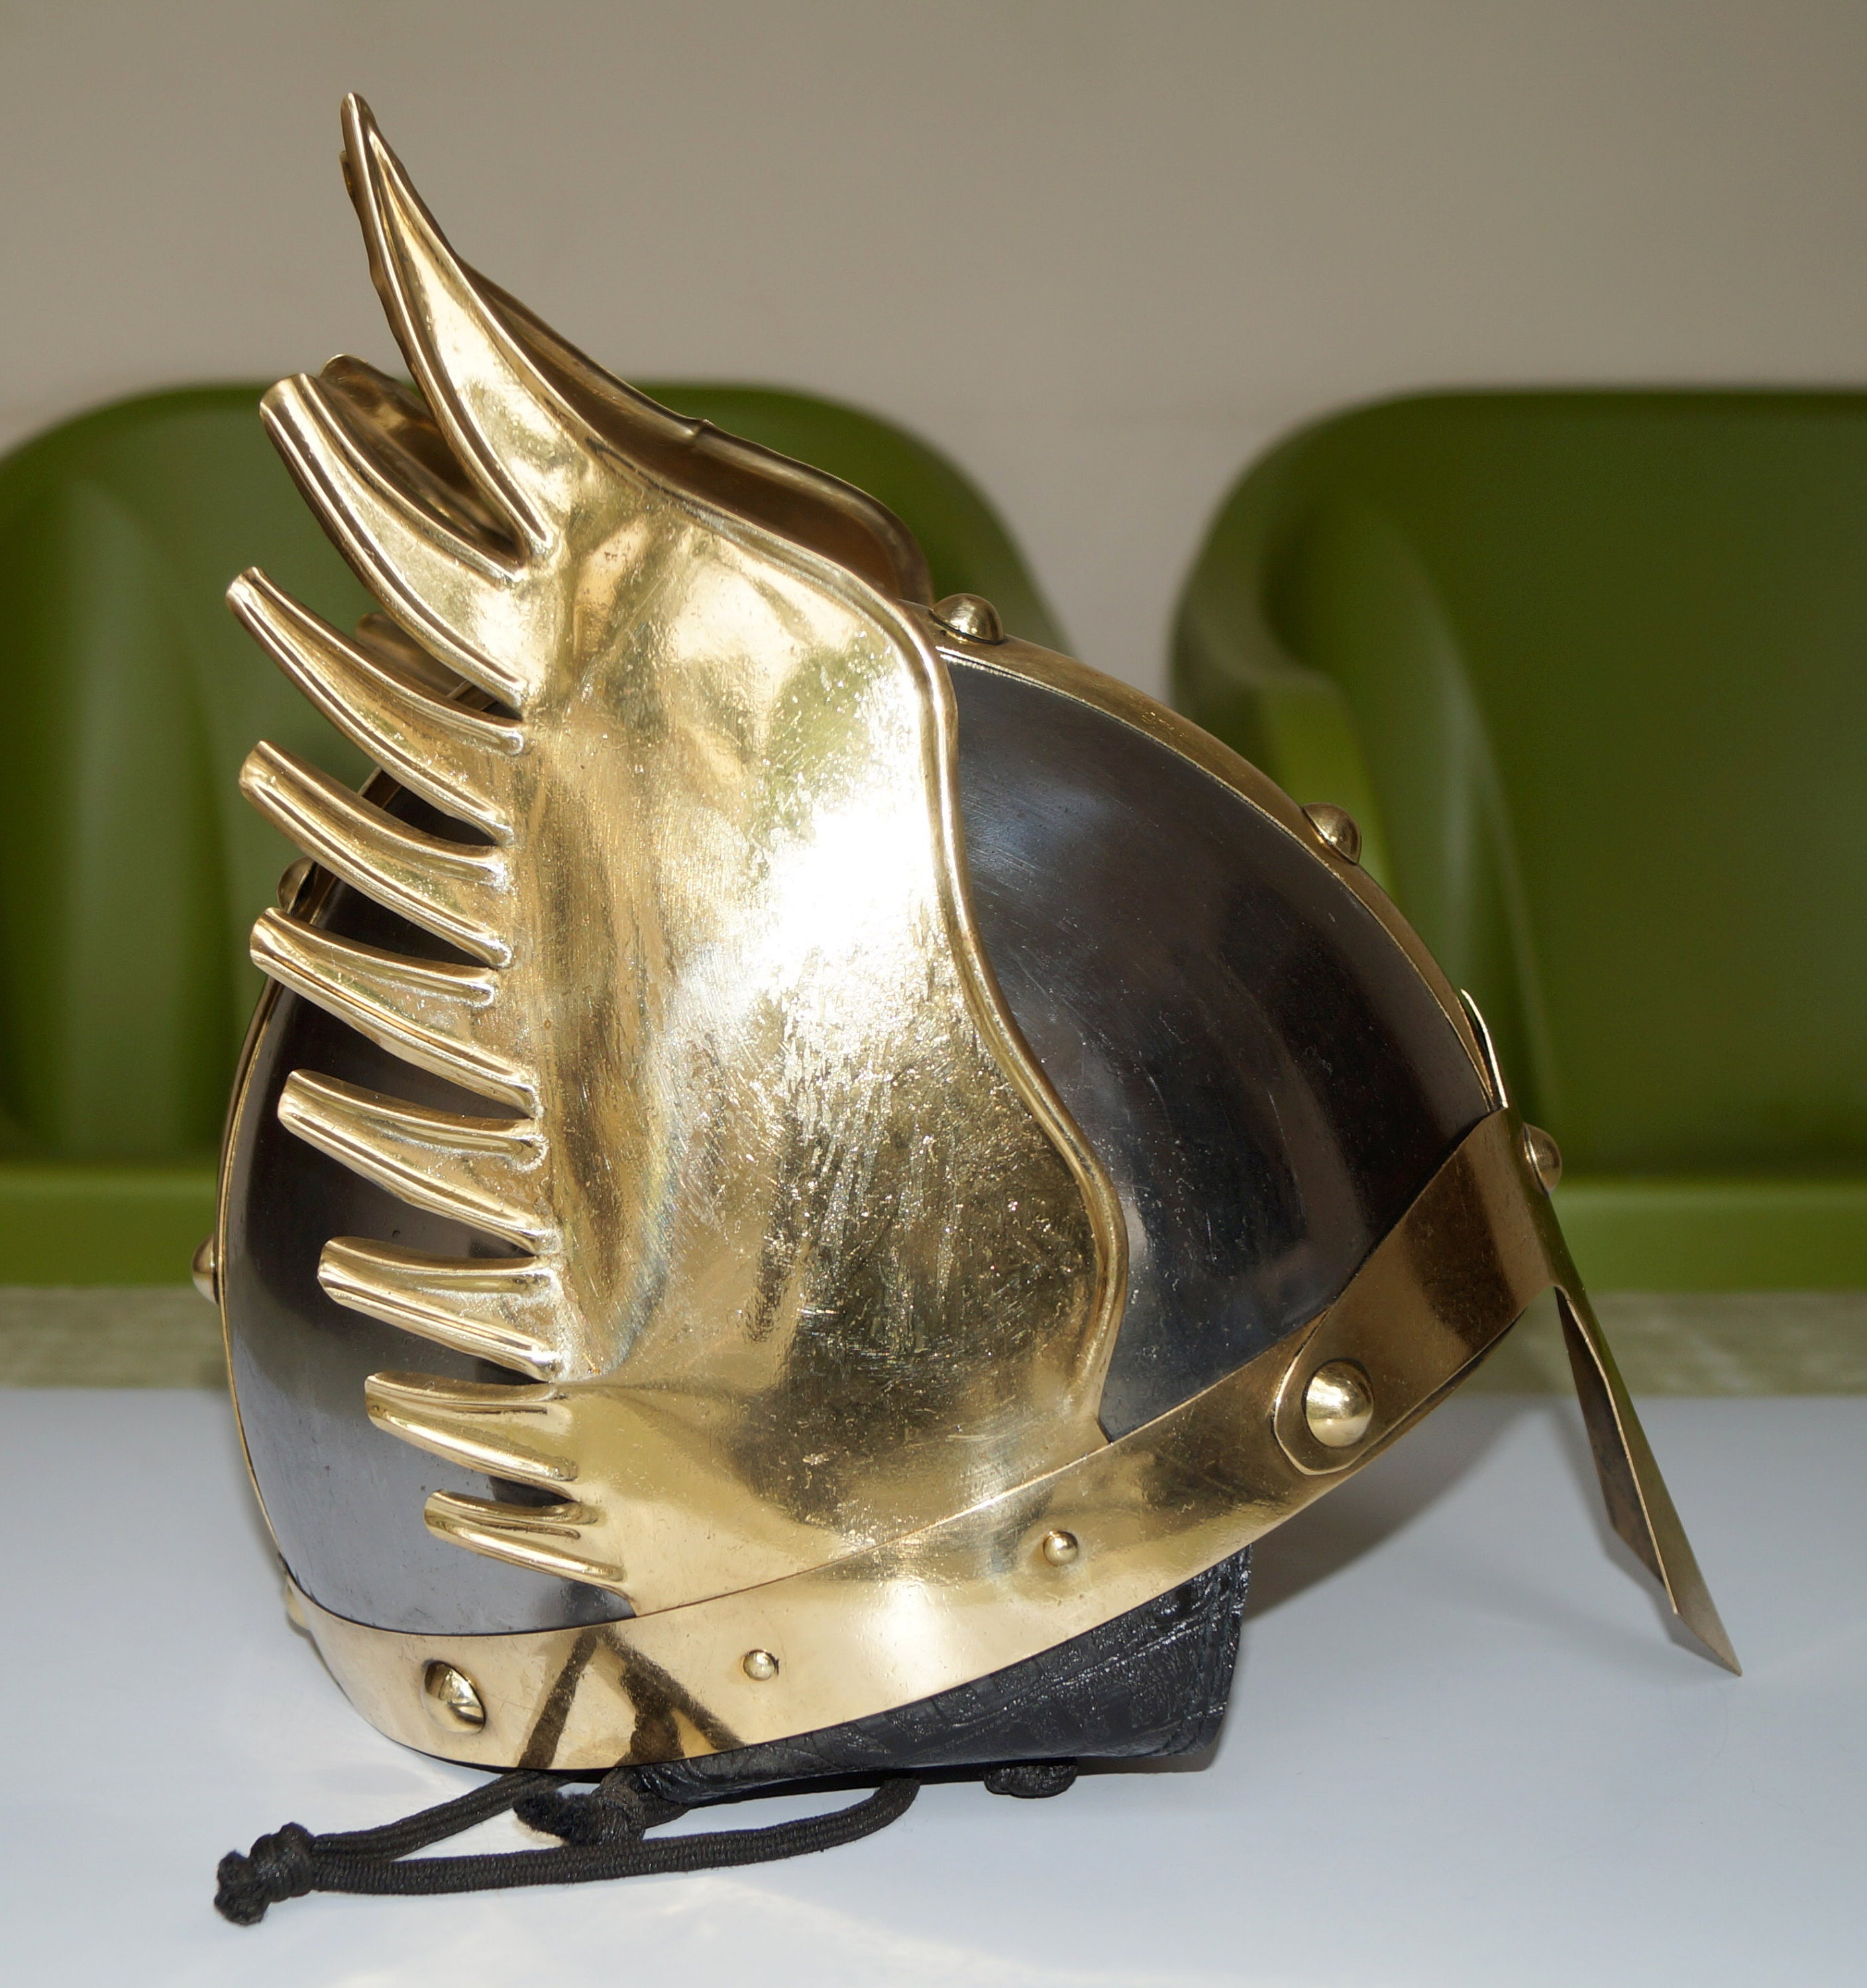 Valkyrie, Hermes, Mercury or Thor's Winged Helmet headband!